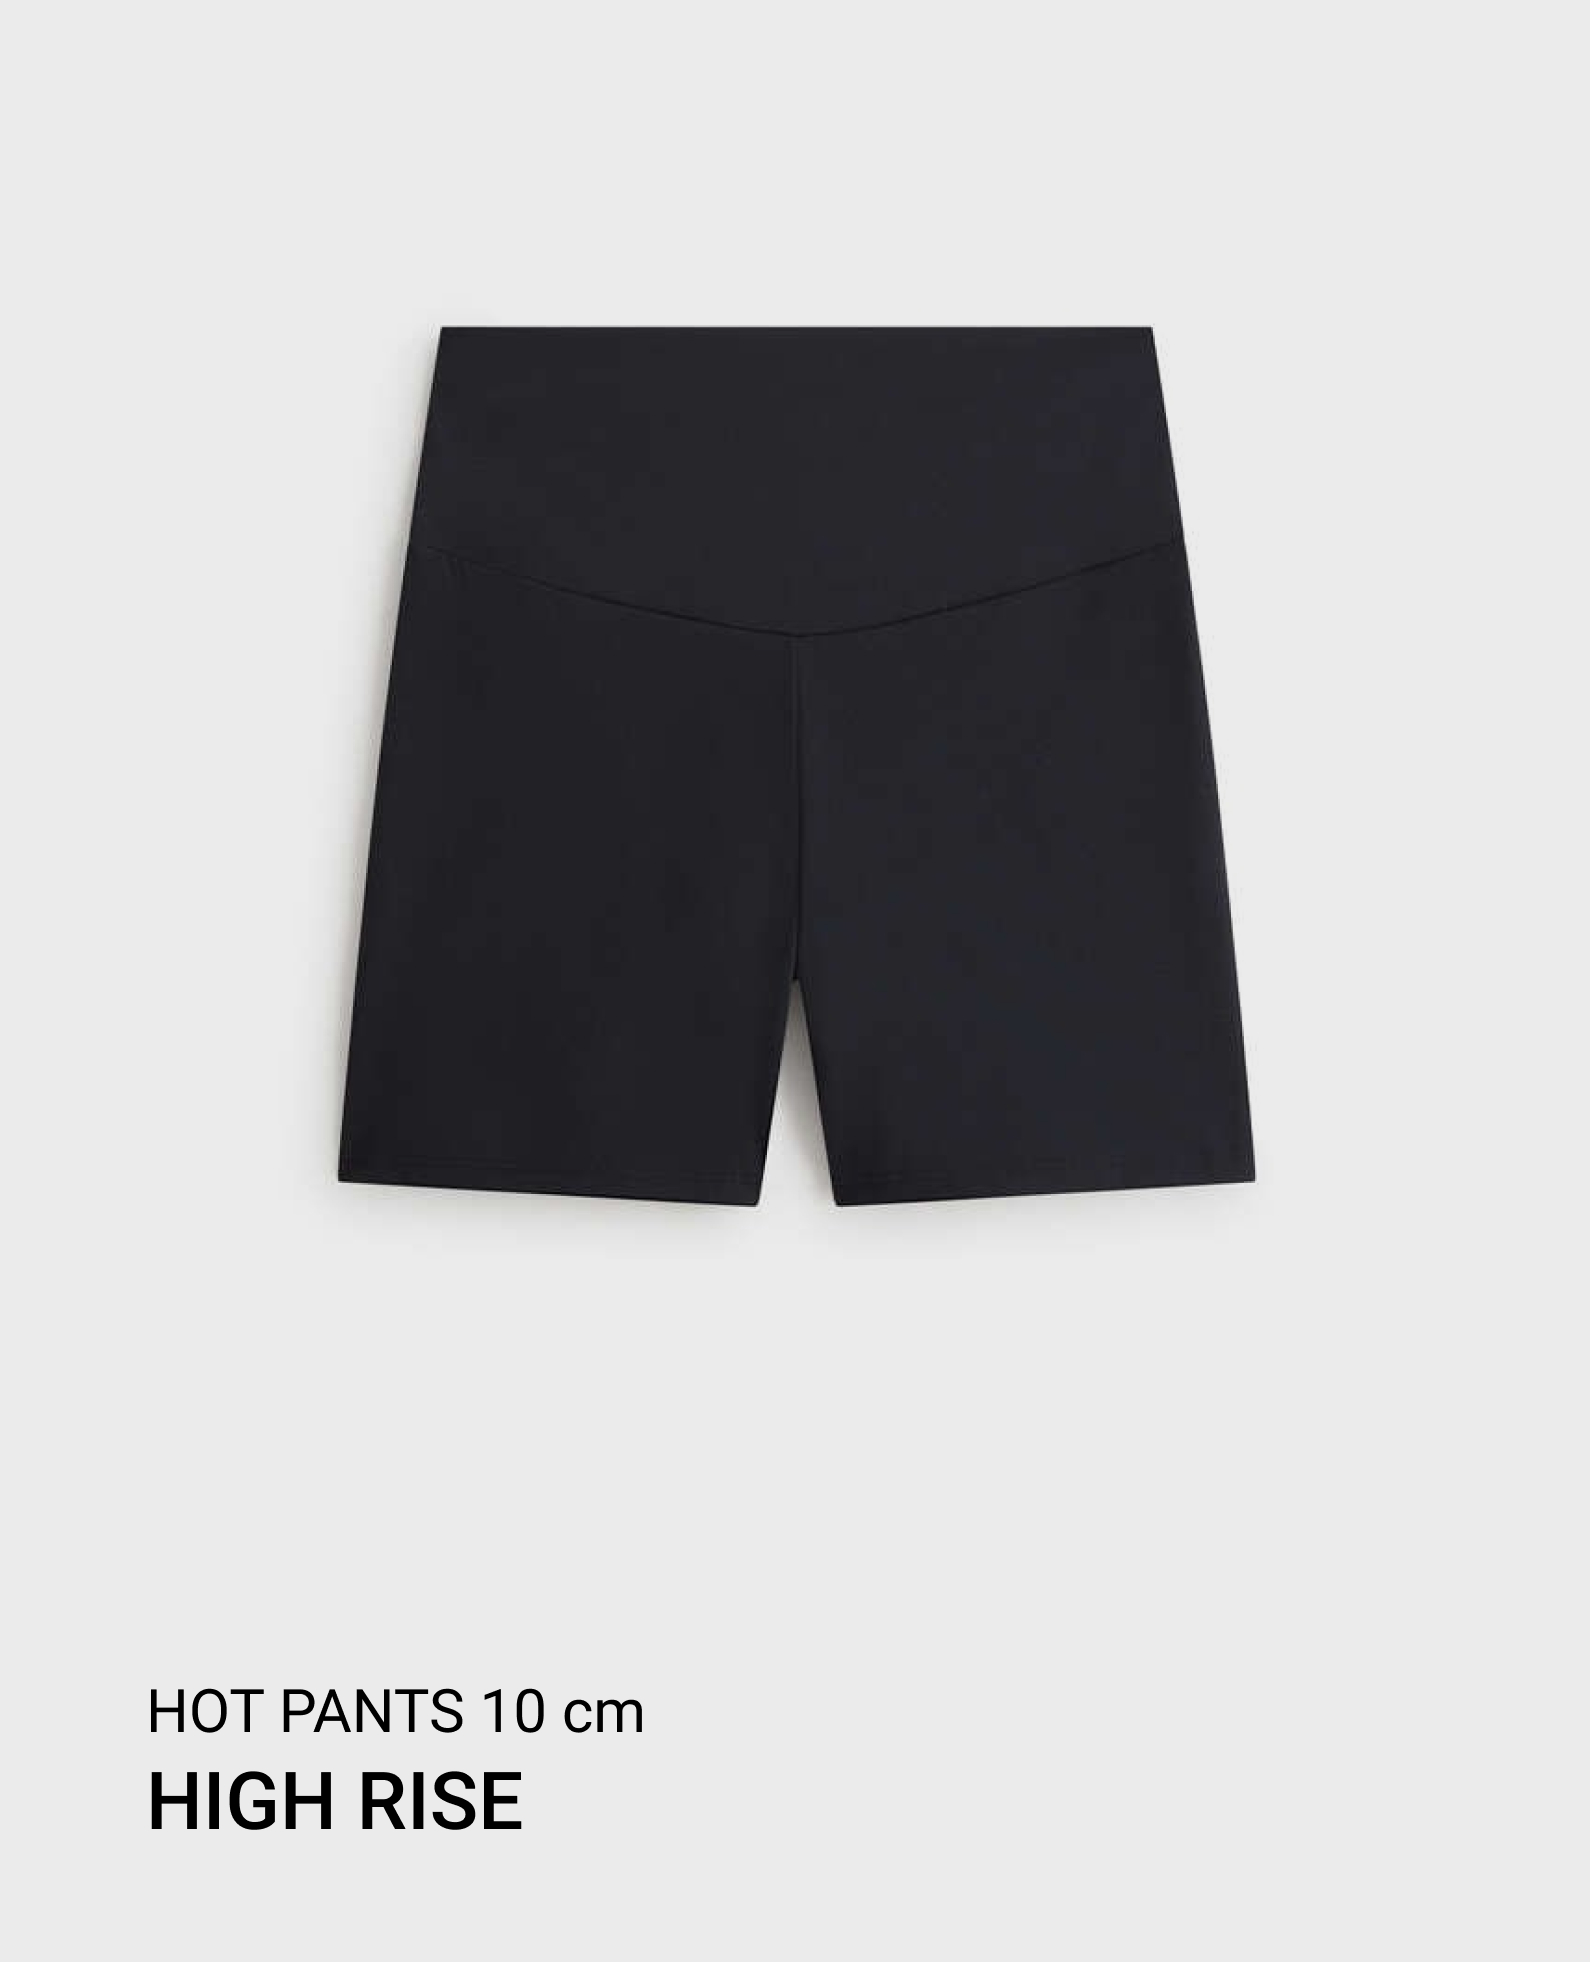 Comfortlux high-rise 10cm hot pants